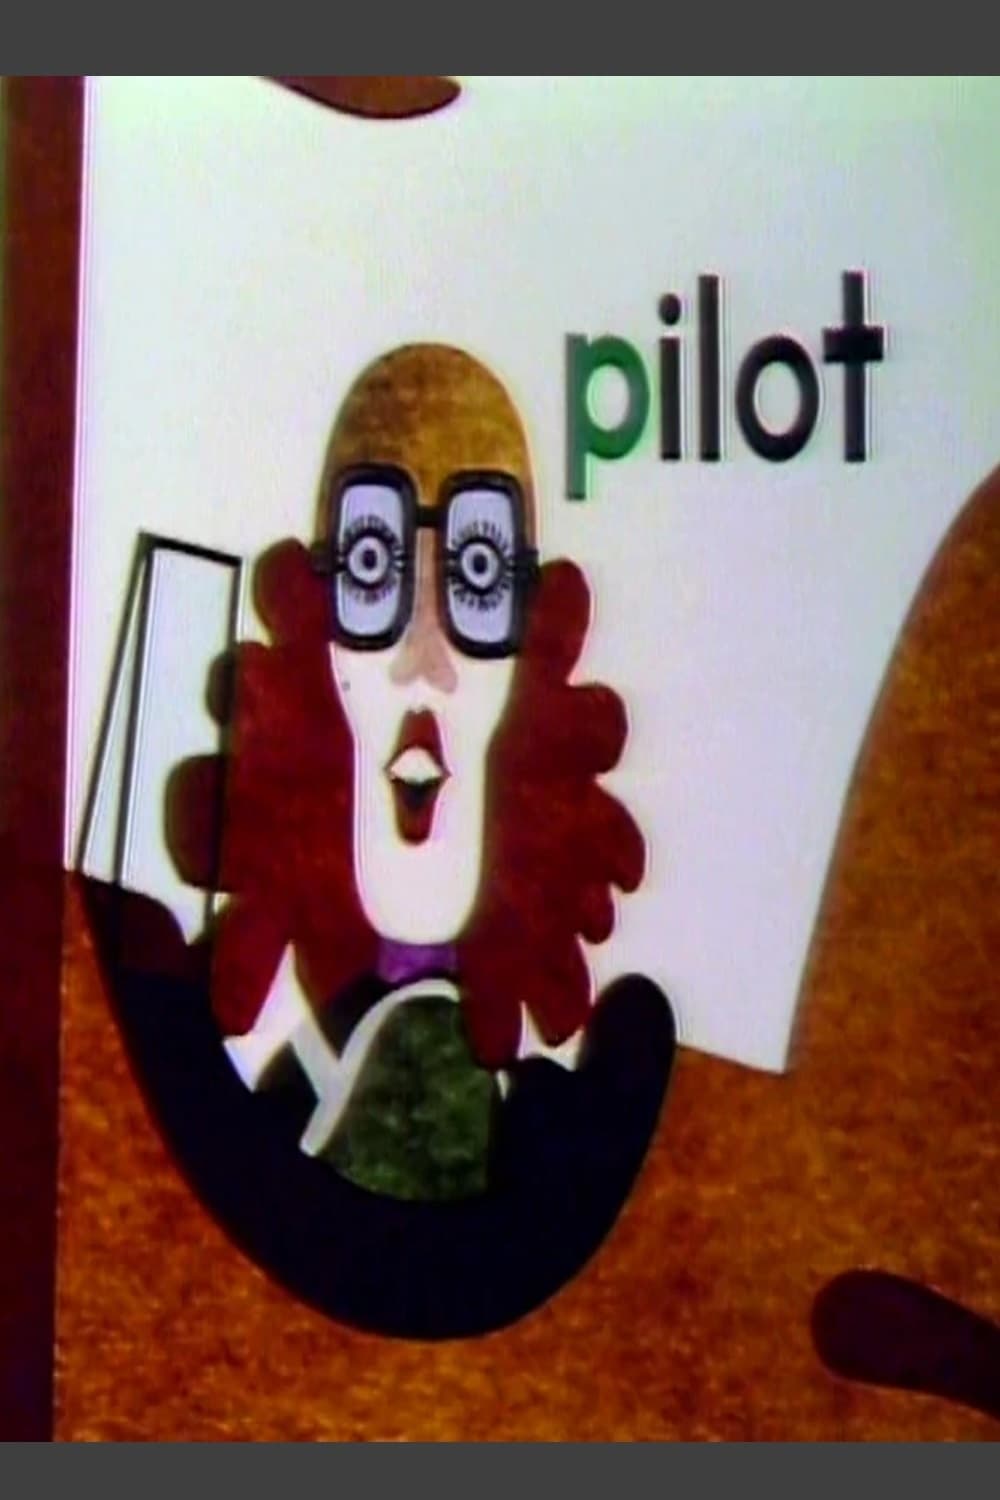 Pat the Pilot